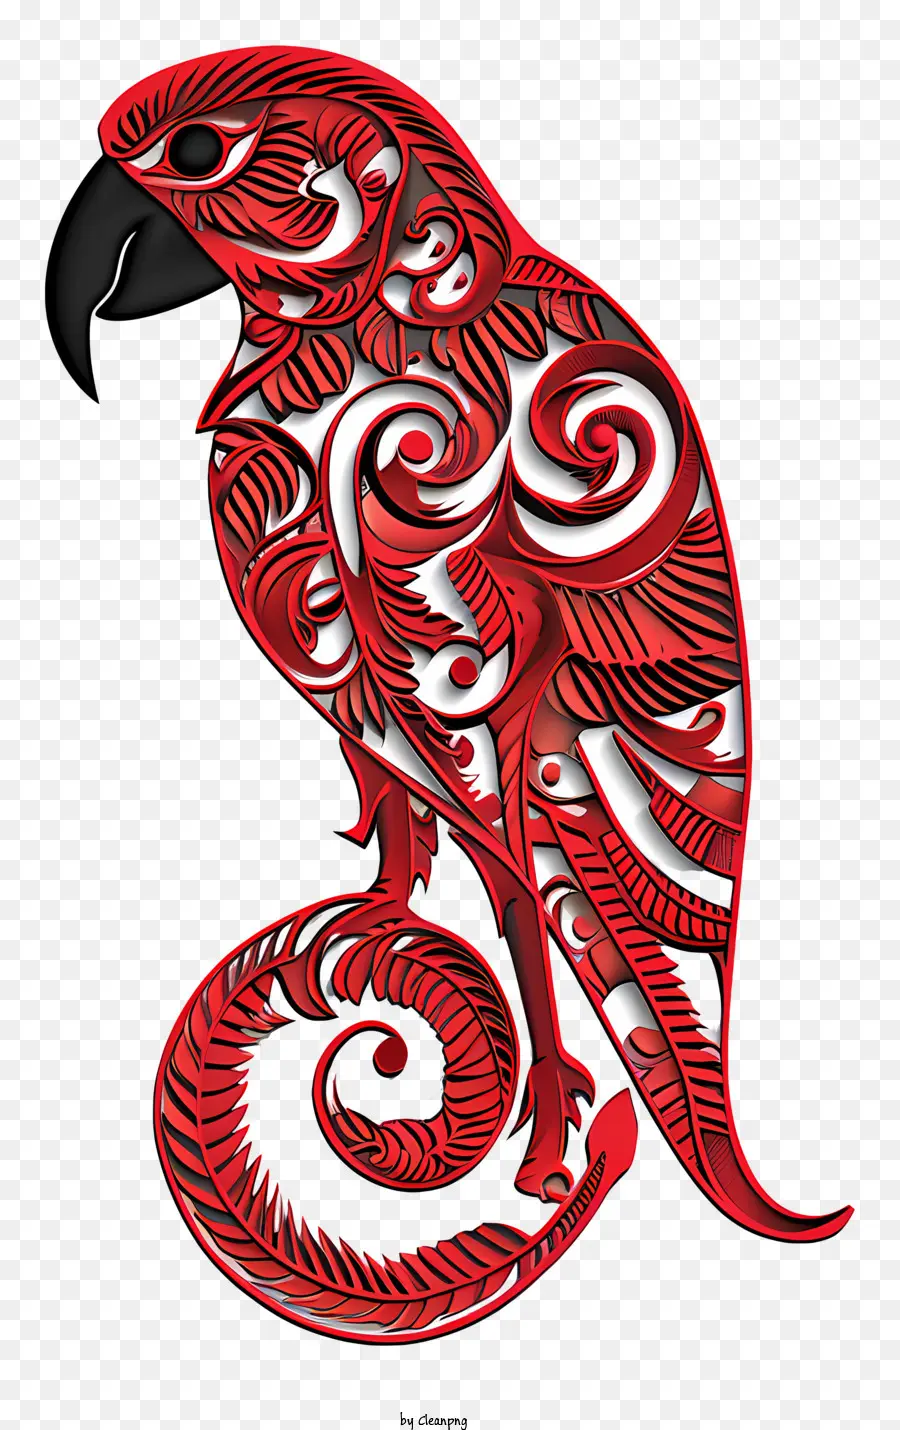 zum waitangi Tag - Red Papagei mit komplizierten Designs, Profilansicht